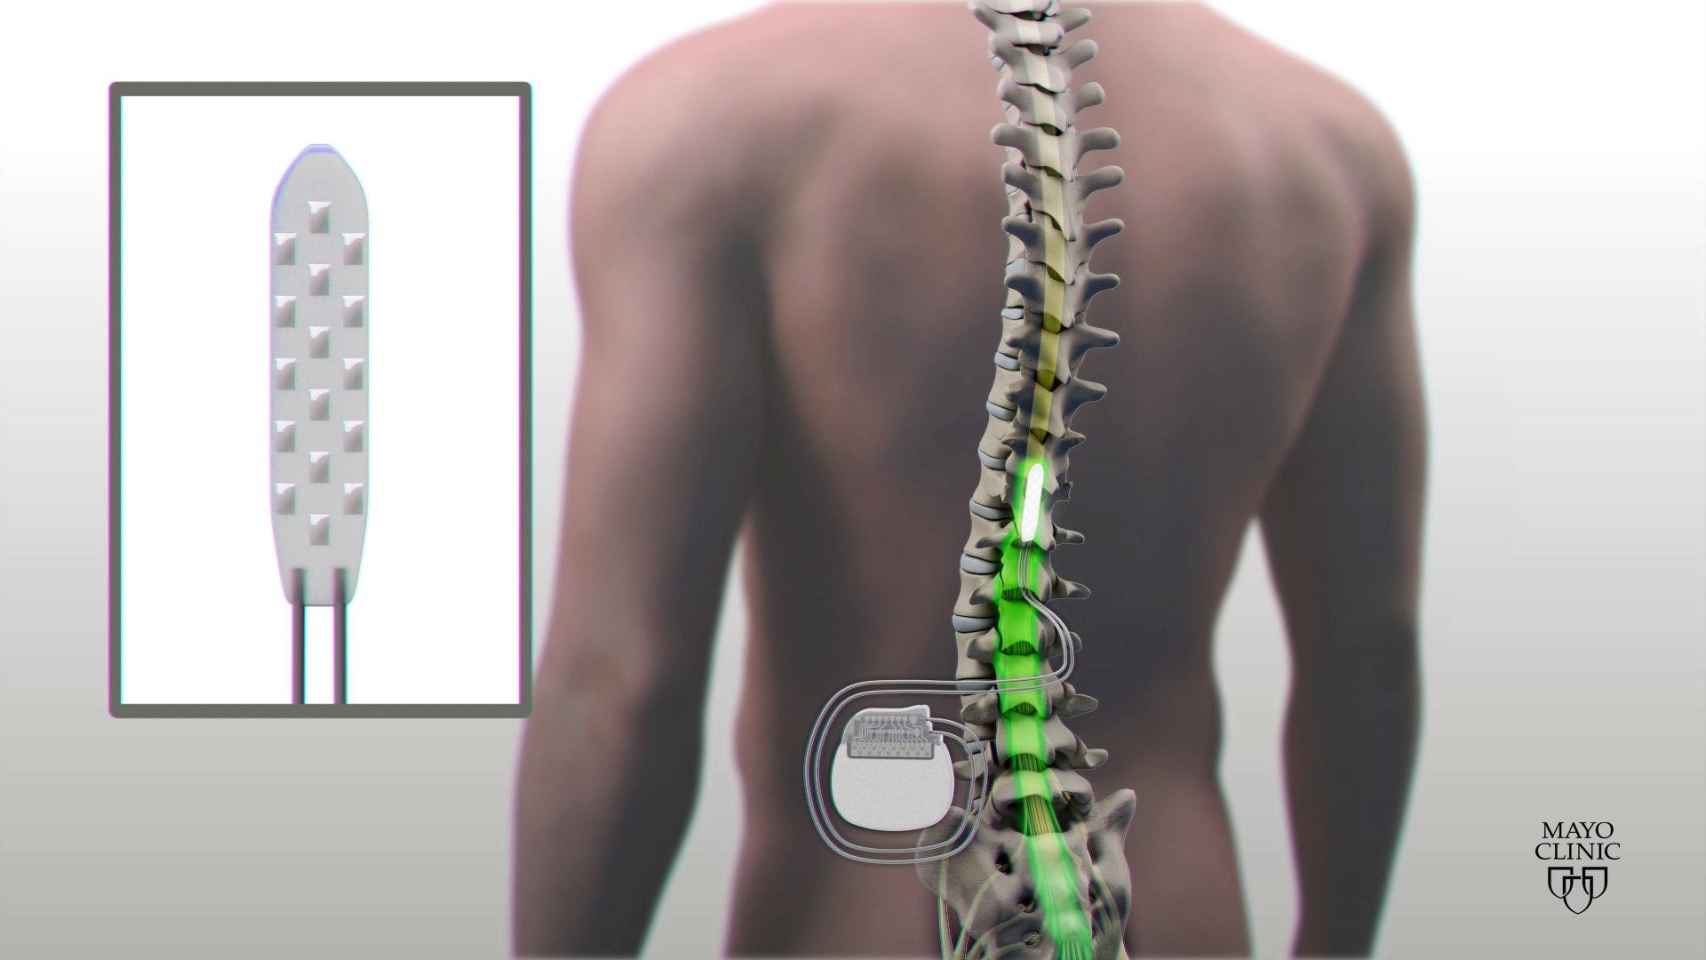 Ilustración que muestra el dispositivo de estimulación espinal eléctrica que le fue implantado a un paciente con una parálisis completa en sus extremidades inferiores tras lesionarse la médula espinal / Clínica Mayo